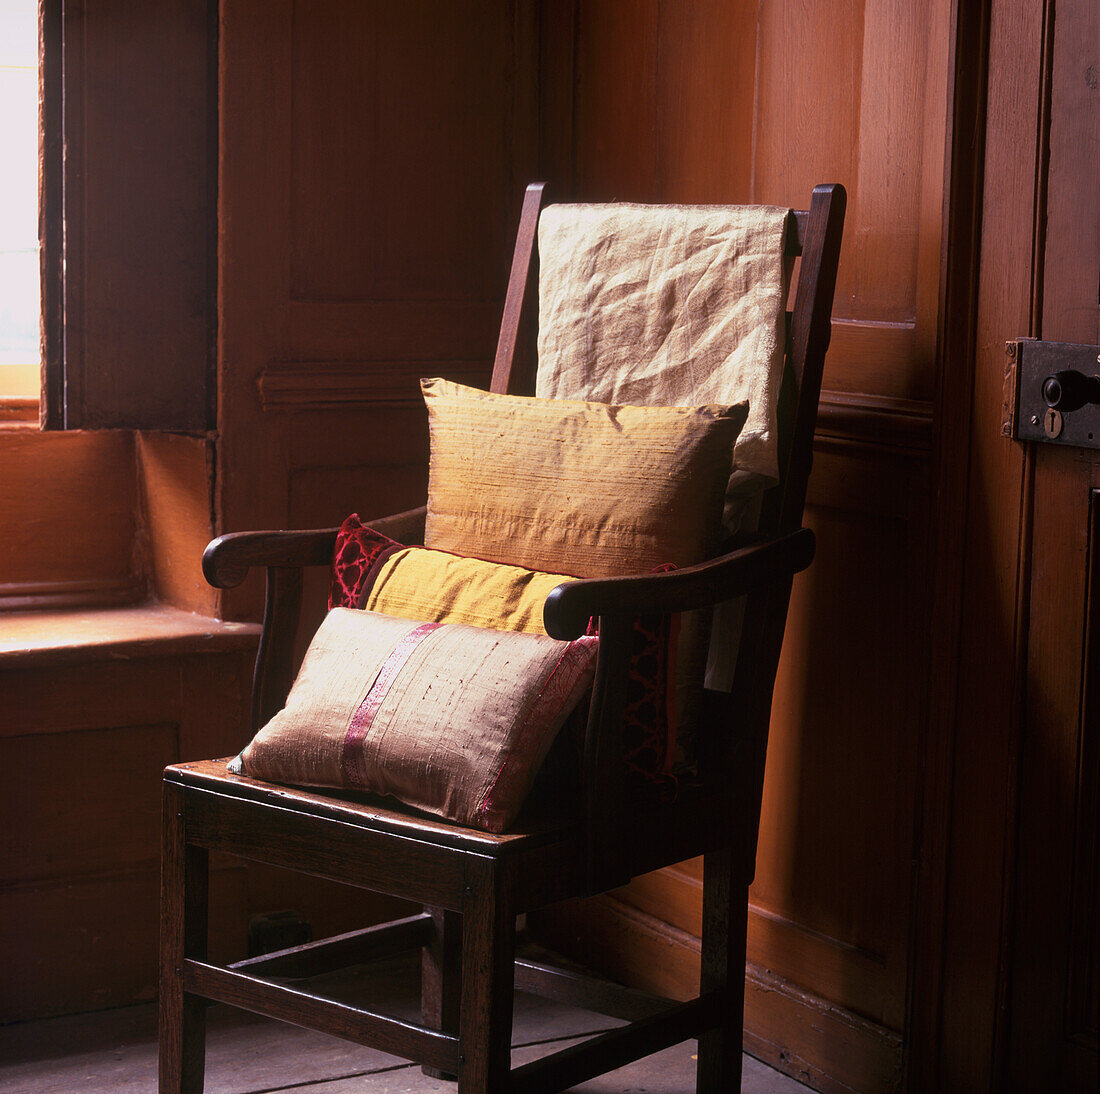 Seidenkissen auf einem Hochlehner-Sessel in einem dunkel getäfelten Raum